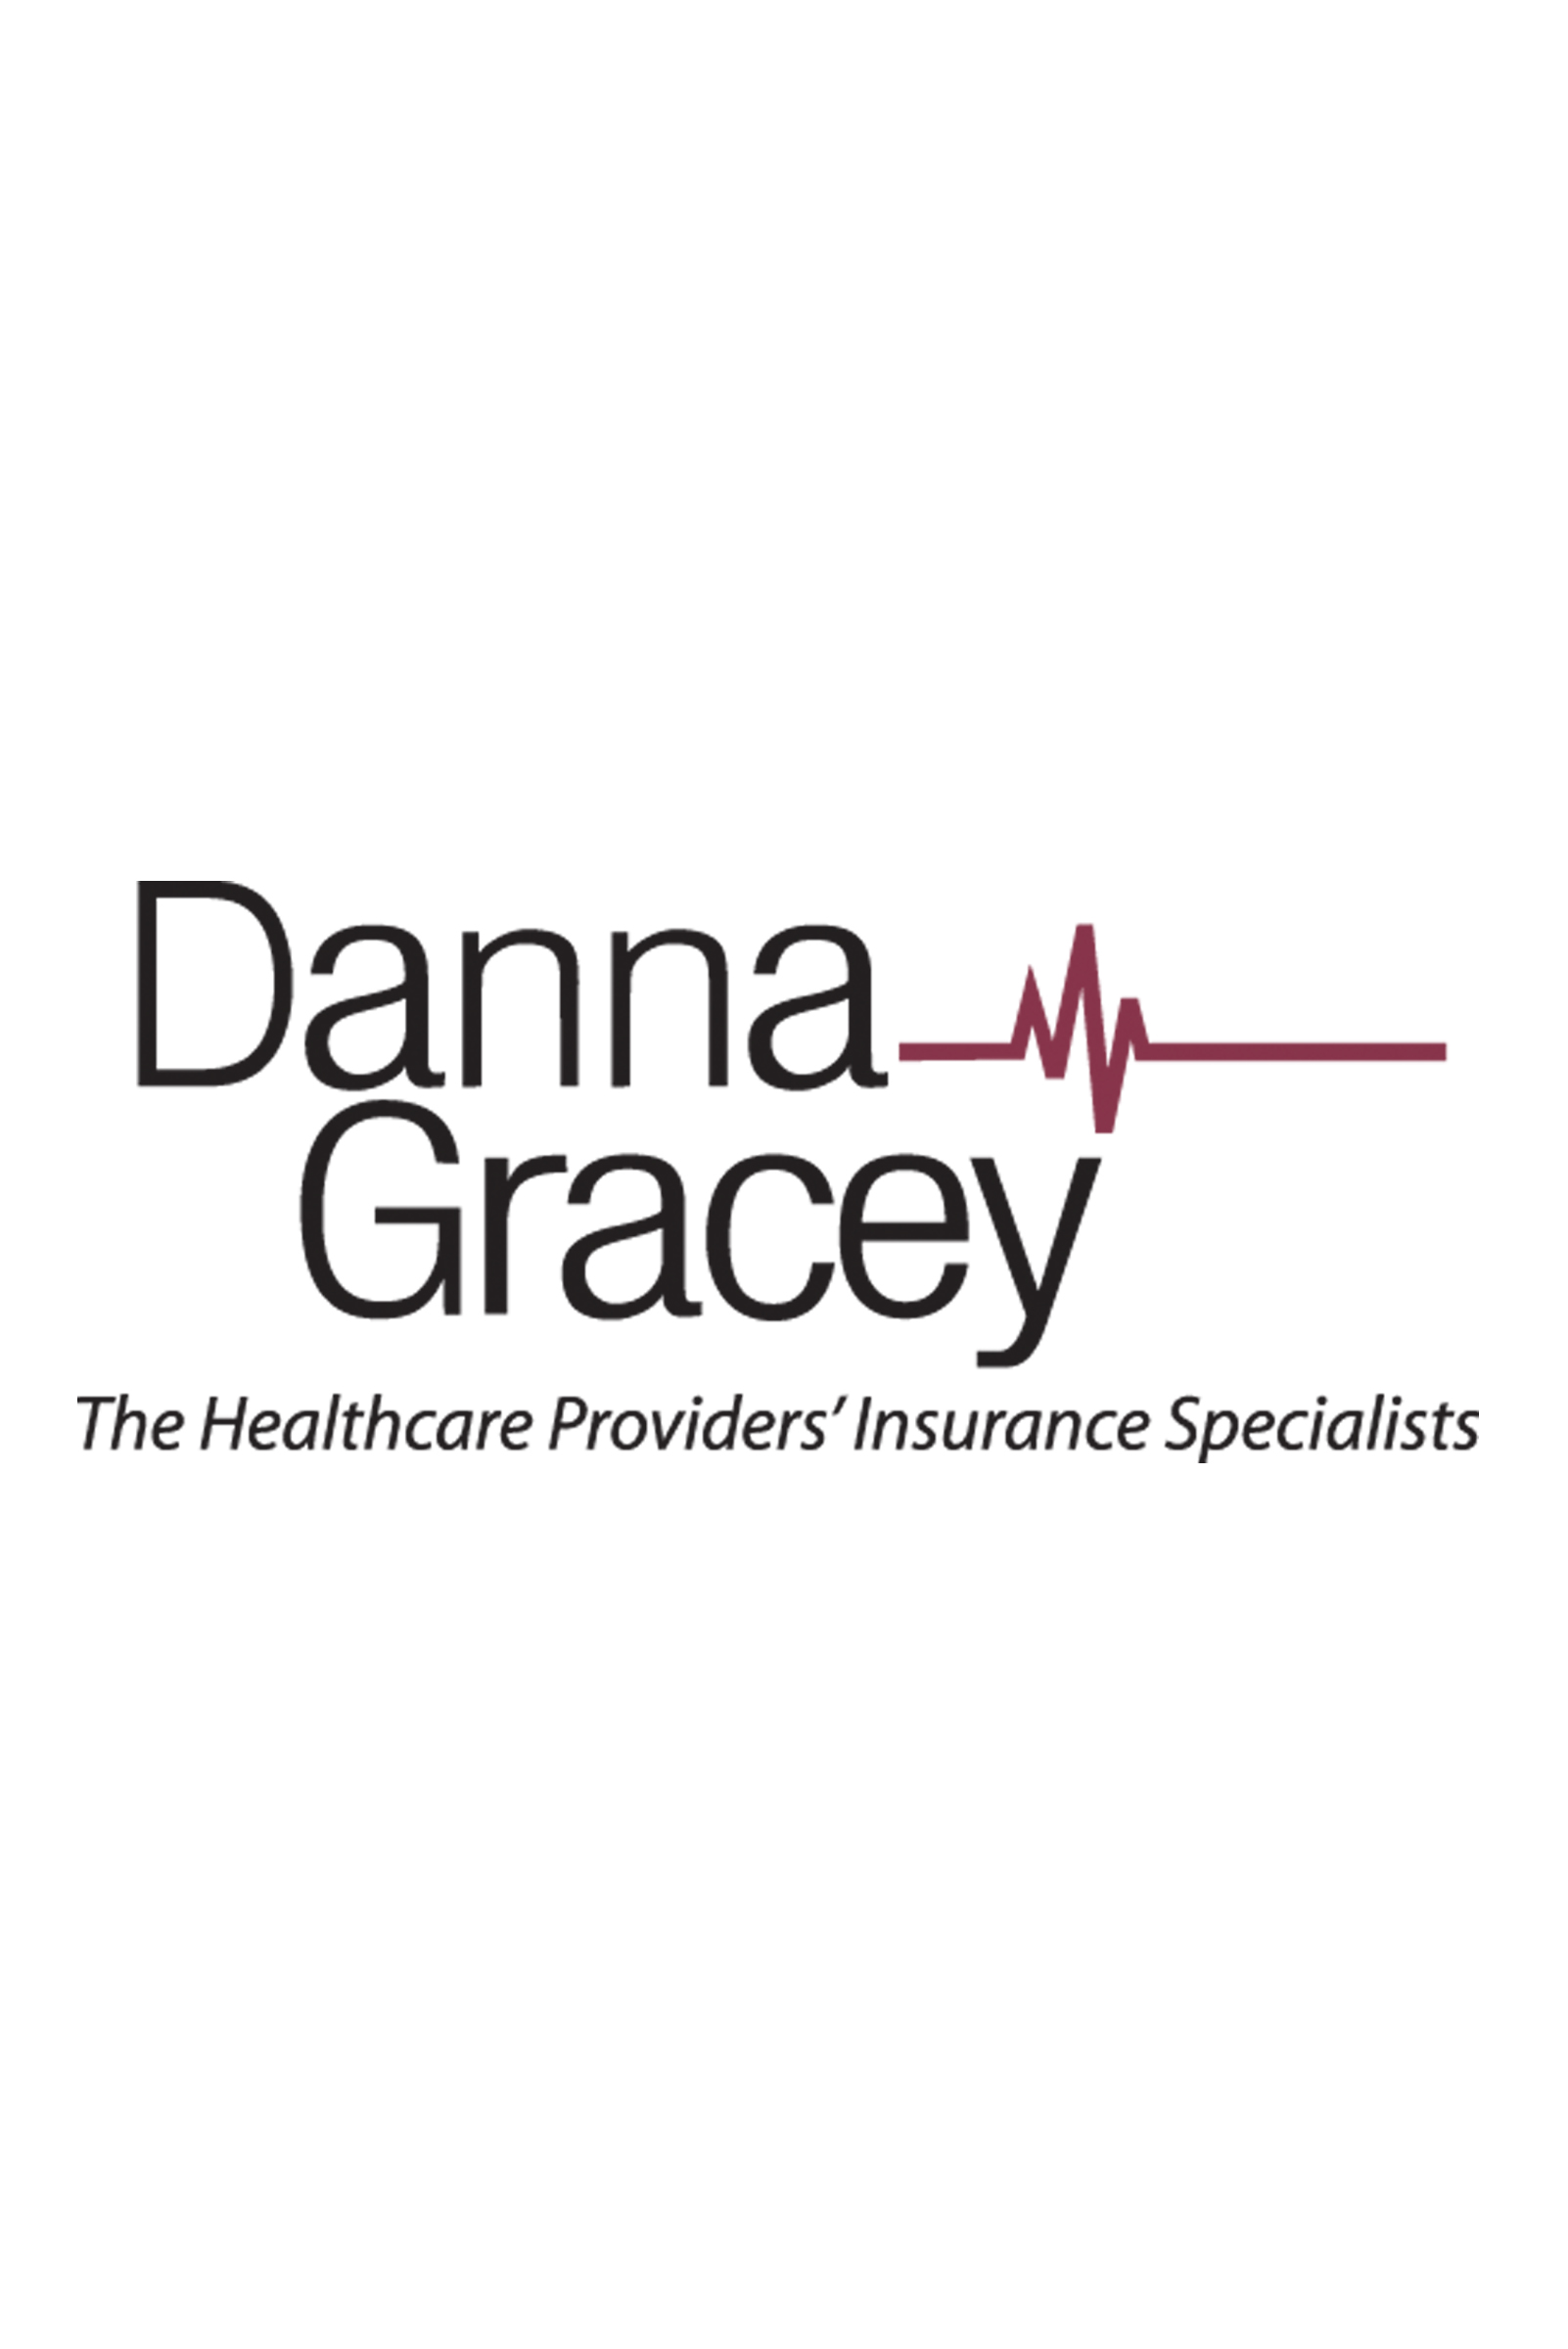 Danna-Gracey logo